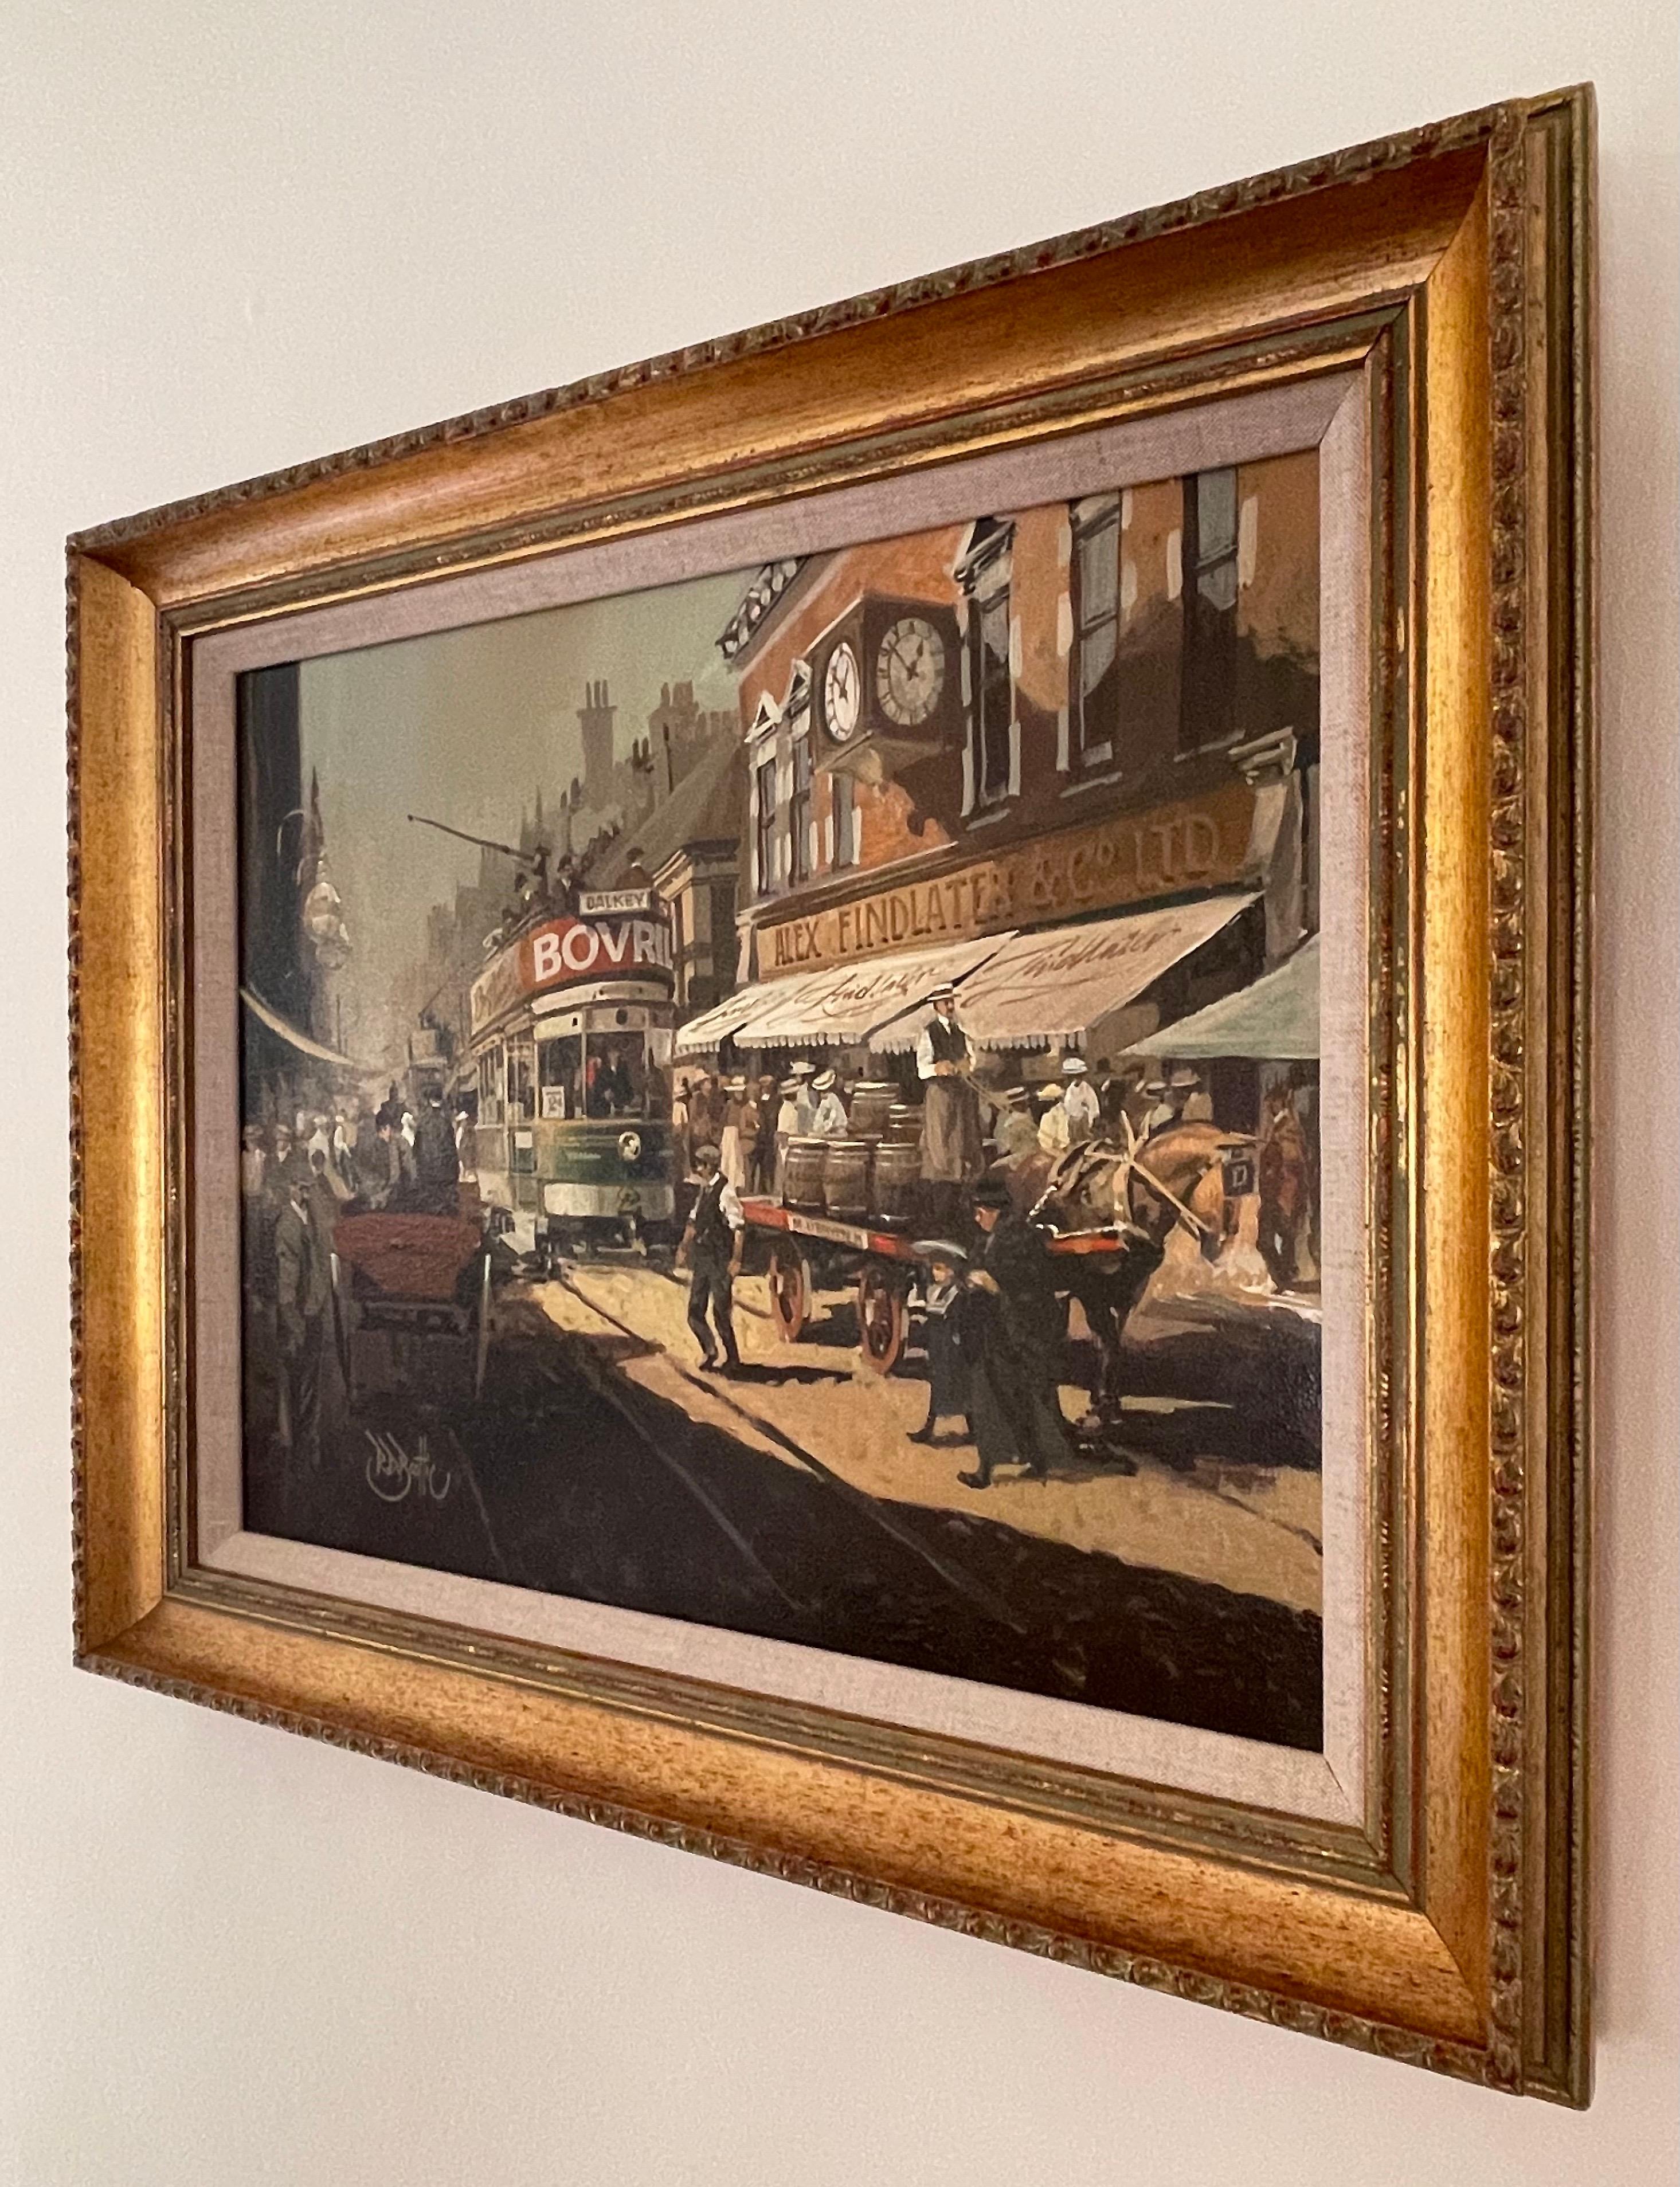 Une peinture à l'huile originale de George's Street Kingstown en 1910 par l'artiste irlandais impressionniste moderne, Robert D. Beattie (1900-1979). Le tableau illustre un moment historique à Dublin au début du 20e siècle. 

L'œuvre d'art mesure 20